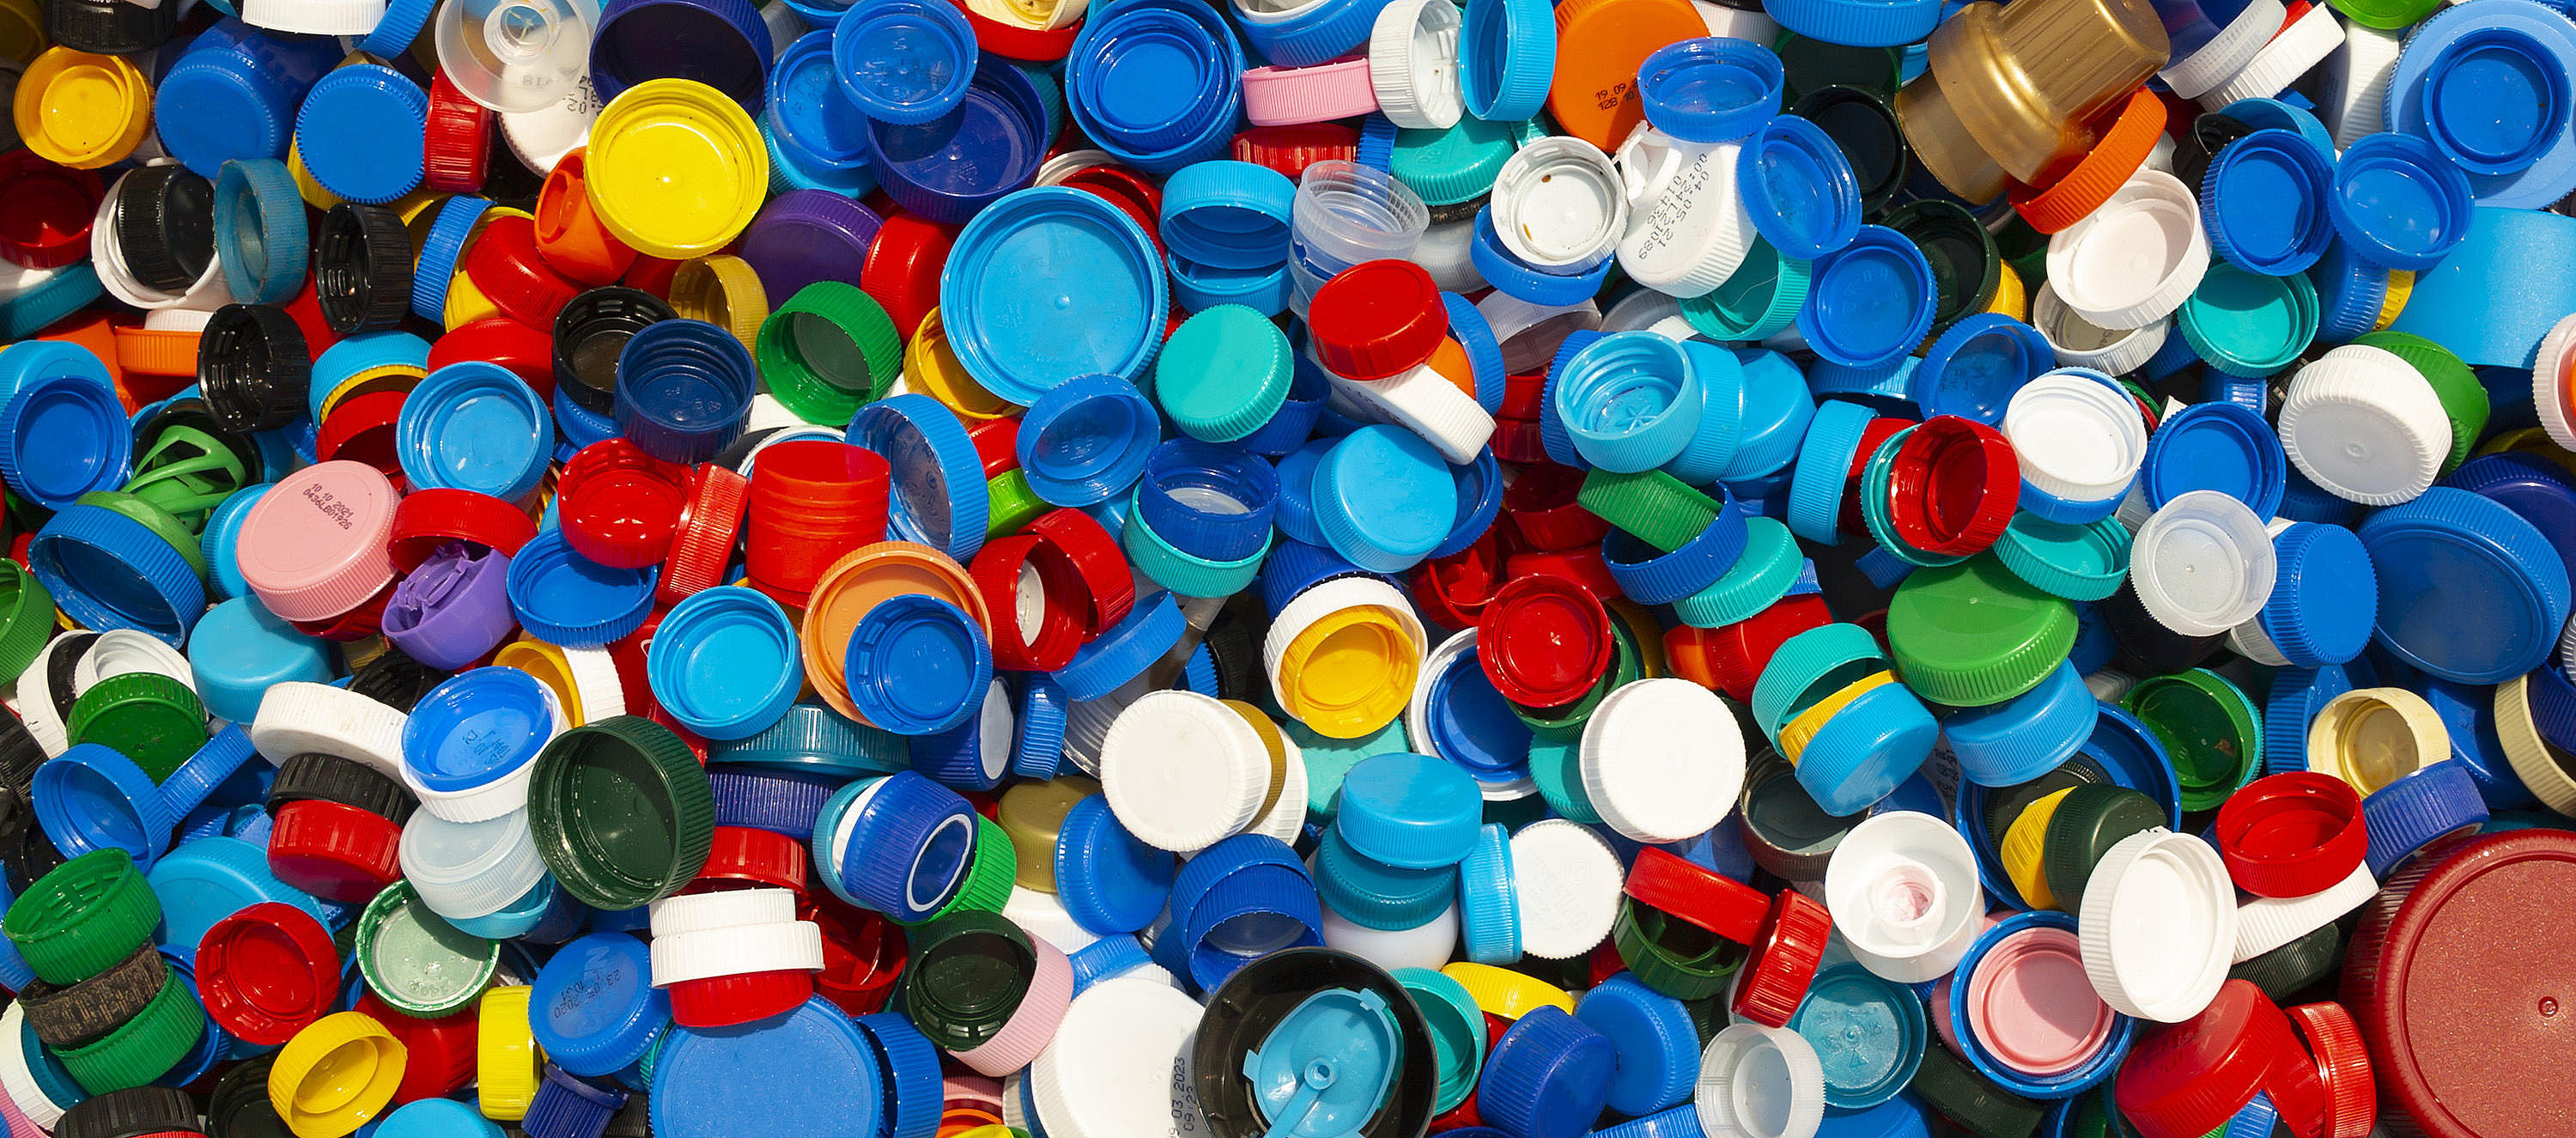 Tausende von bunten Kunststoffkappen werden zum Recycling gestapelt.